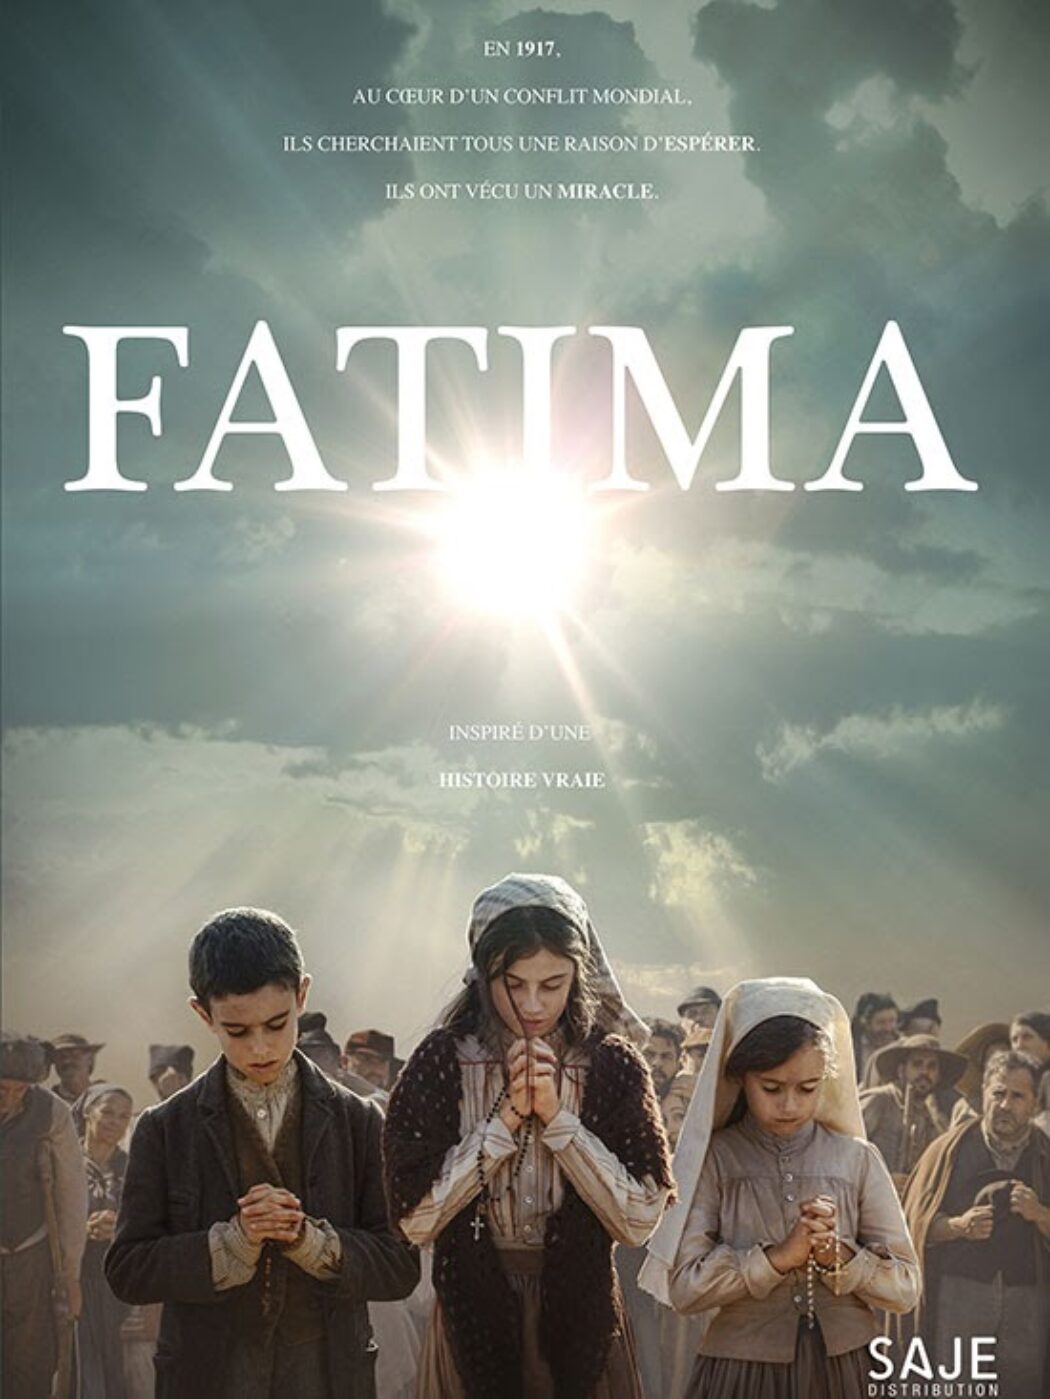 Le film FATIMA sort au cinéma partout en France, à partir du 6 octobre